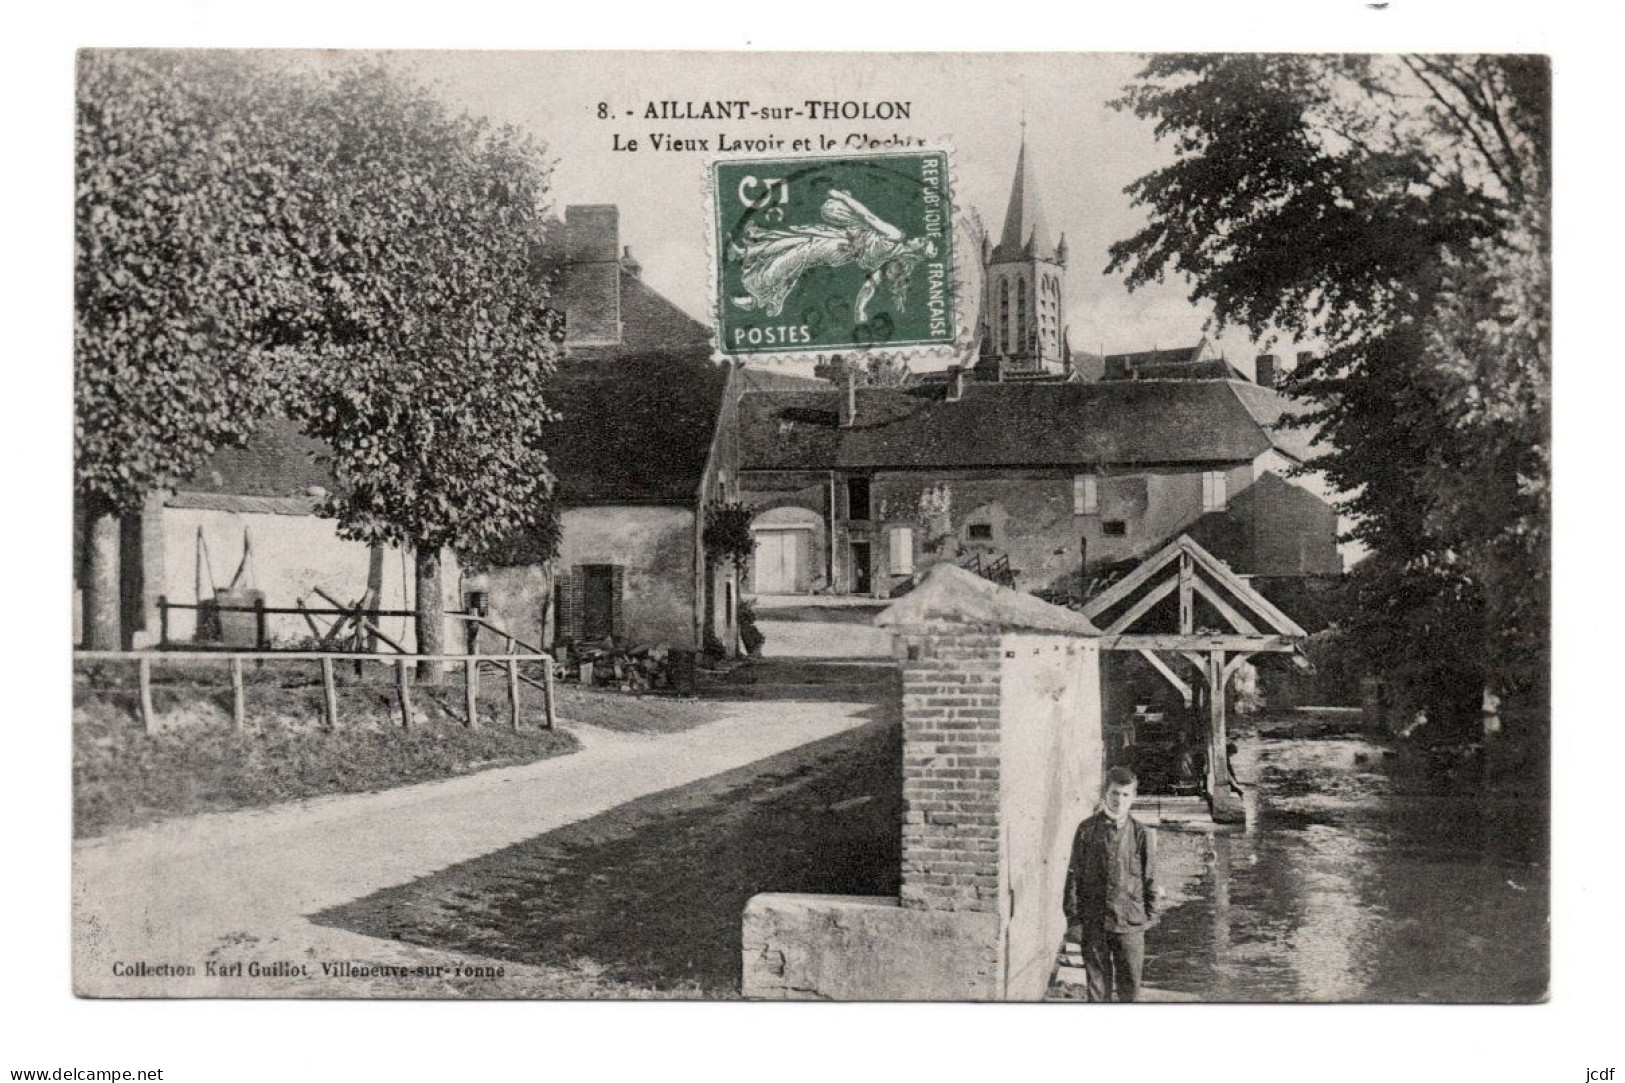 89 AILLANT SUR THOLON - Le Vieux Lavoir Et Le Clocher N° 8 - Edit Karl Guillot 1909 - Enfant - Charette - Aillant Sur Tholon